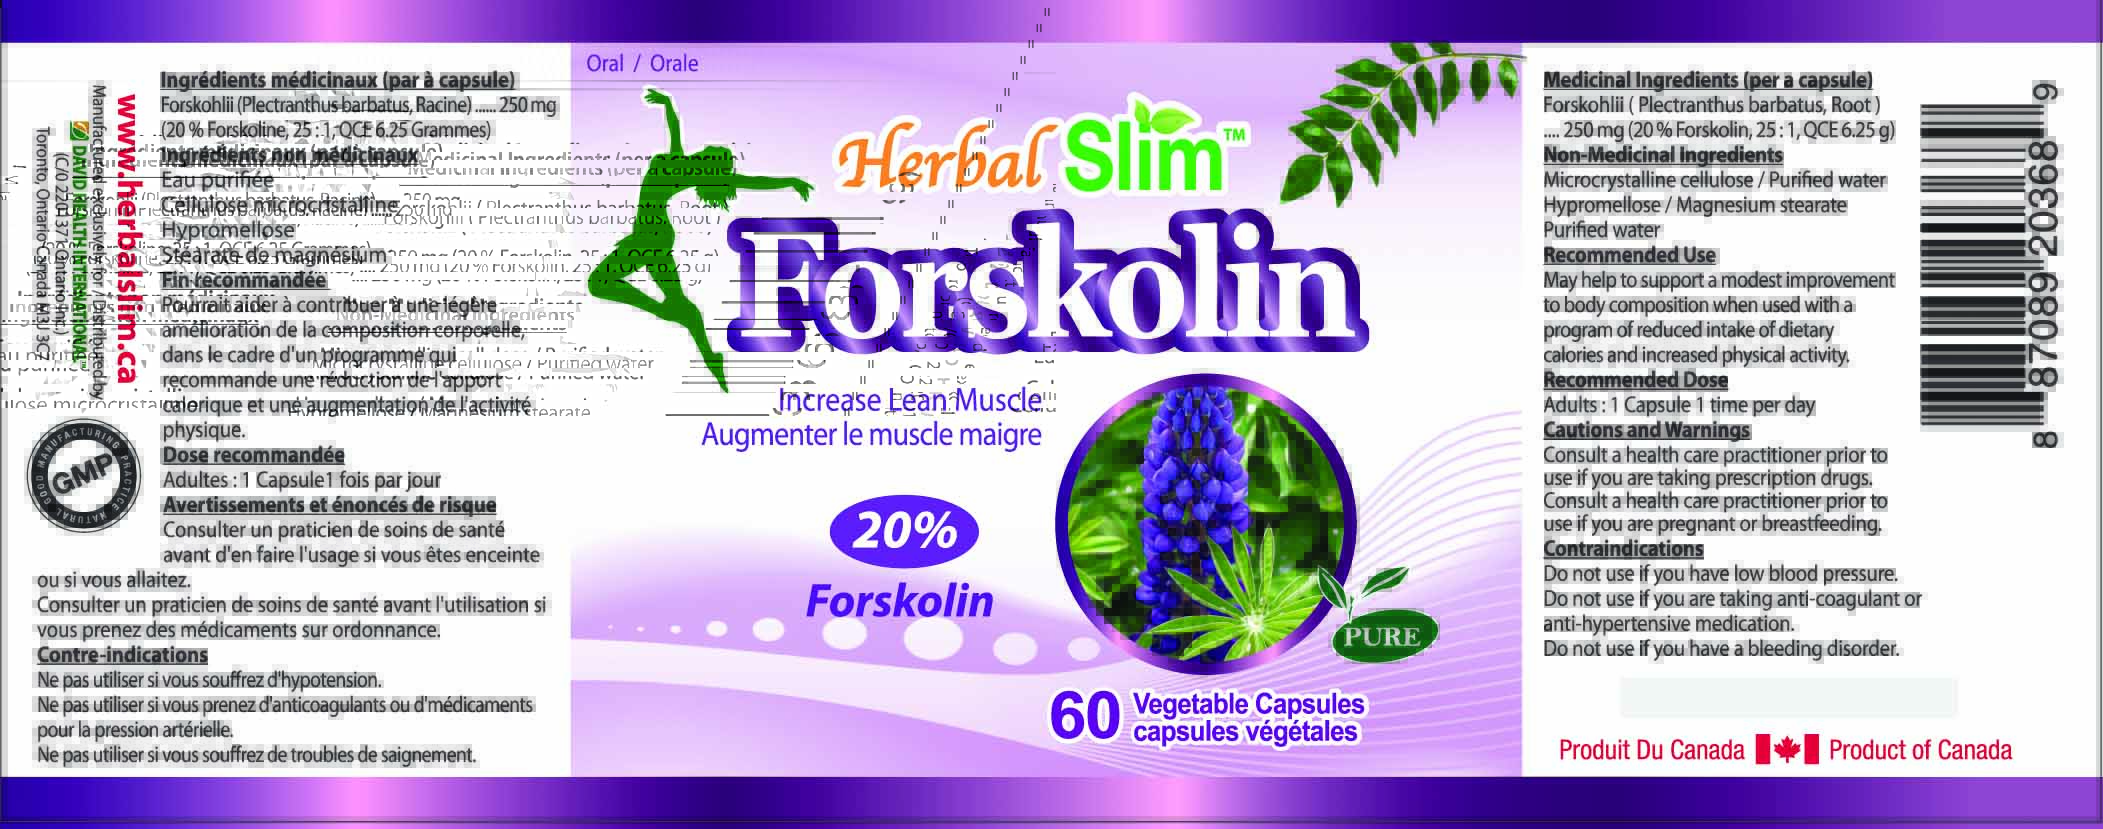 HerbalSlim Forskolin